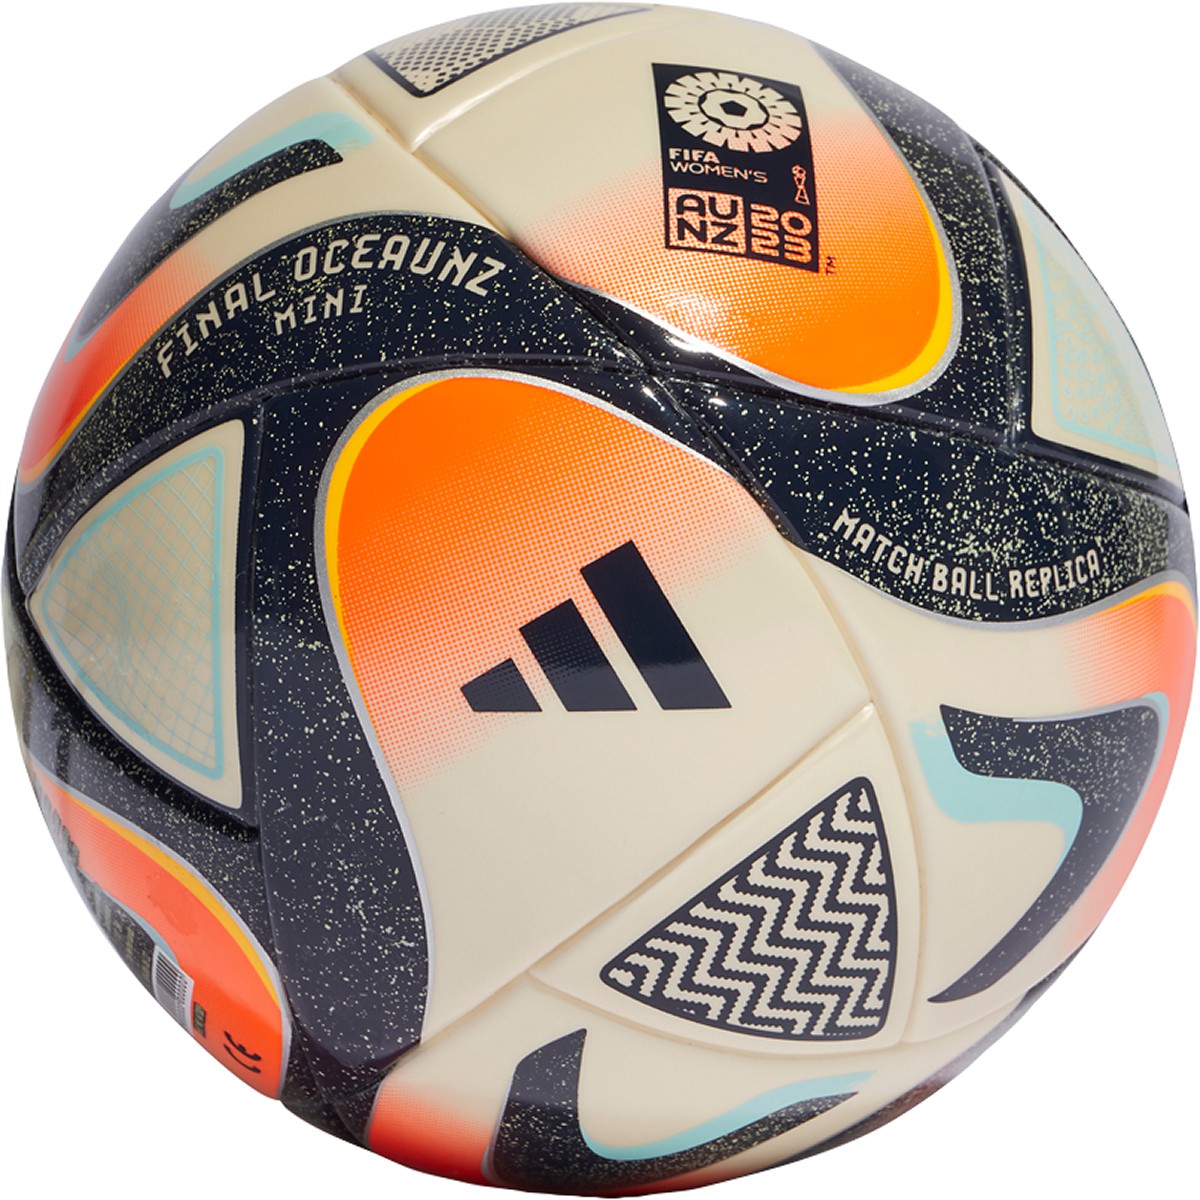 Adidas Women's World Cup 2023 Oceaunz Final Mini Ball